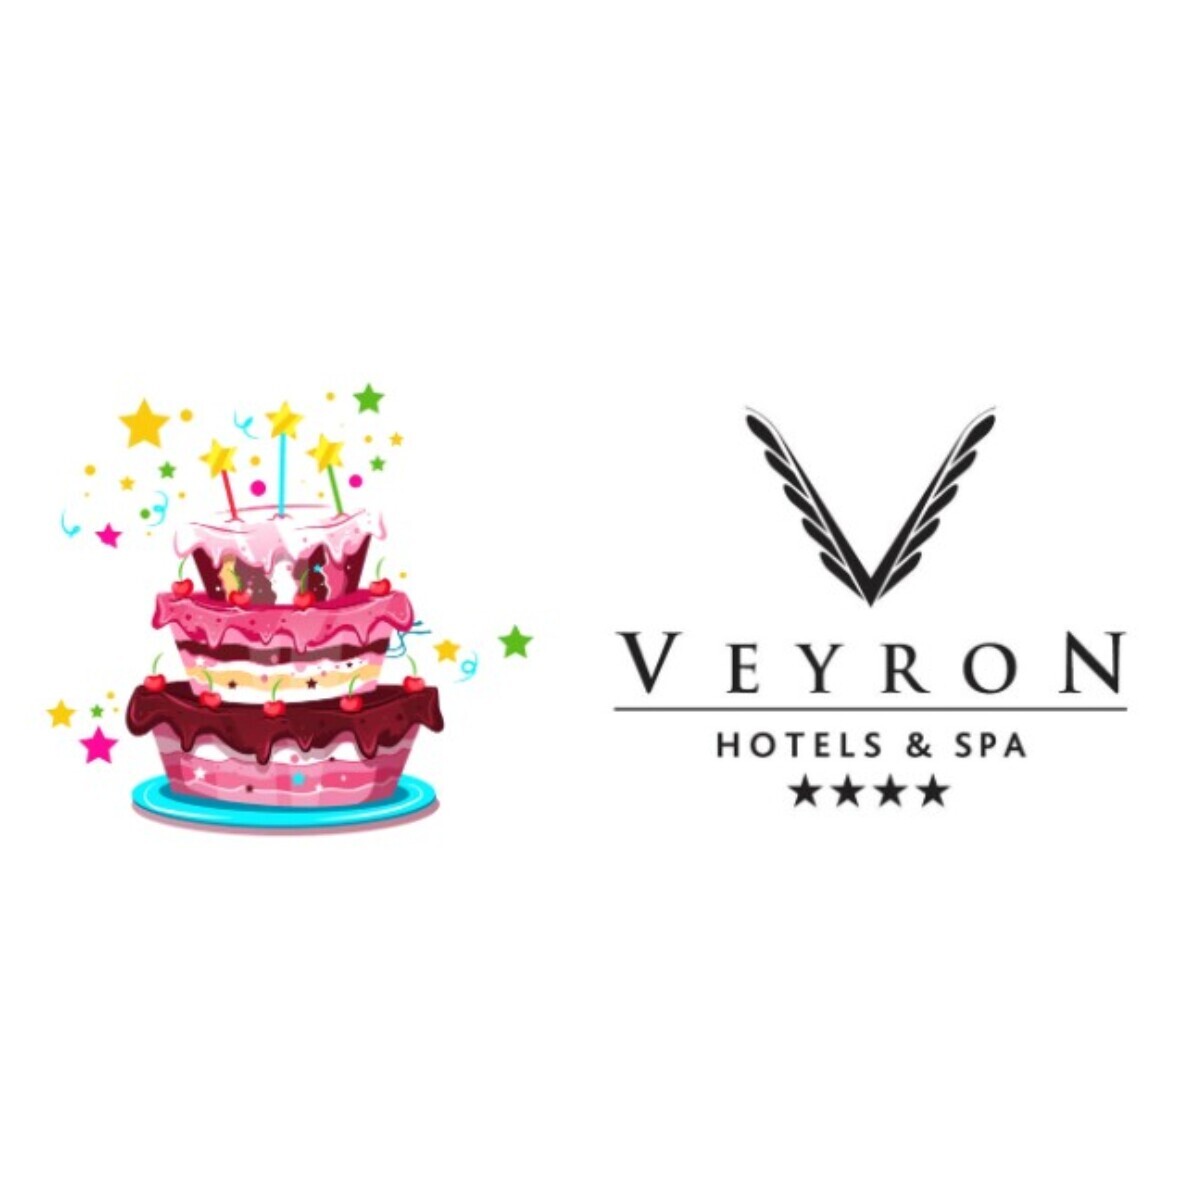 Veyron Park Hotel'de Doğum Günü & Baby Shower'a Özel Organizasyon Paketleri